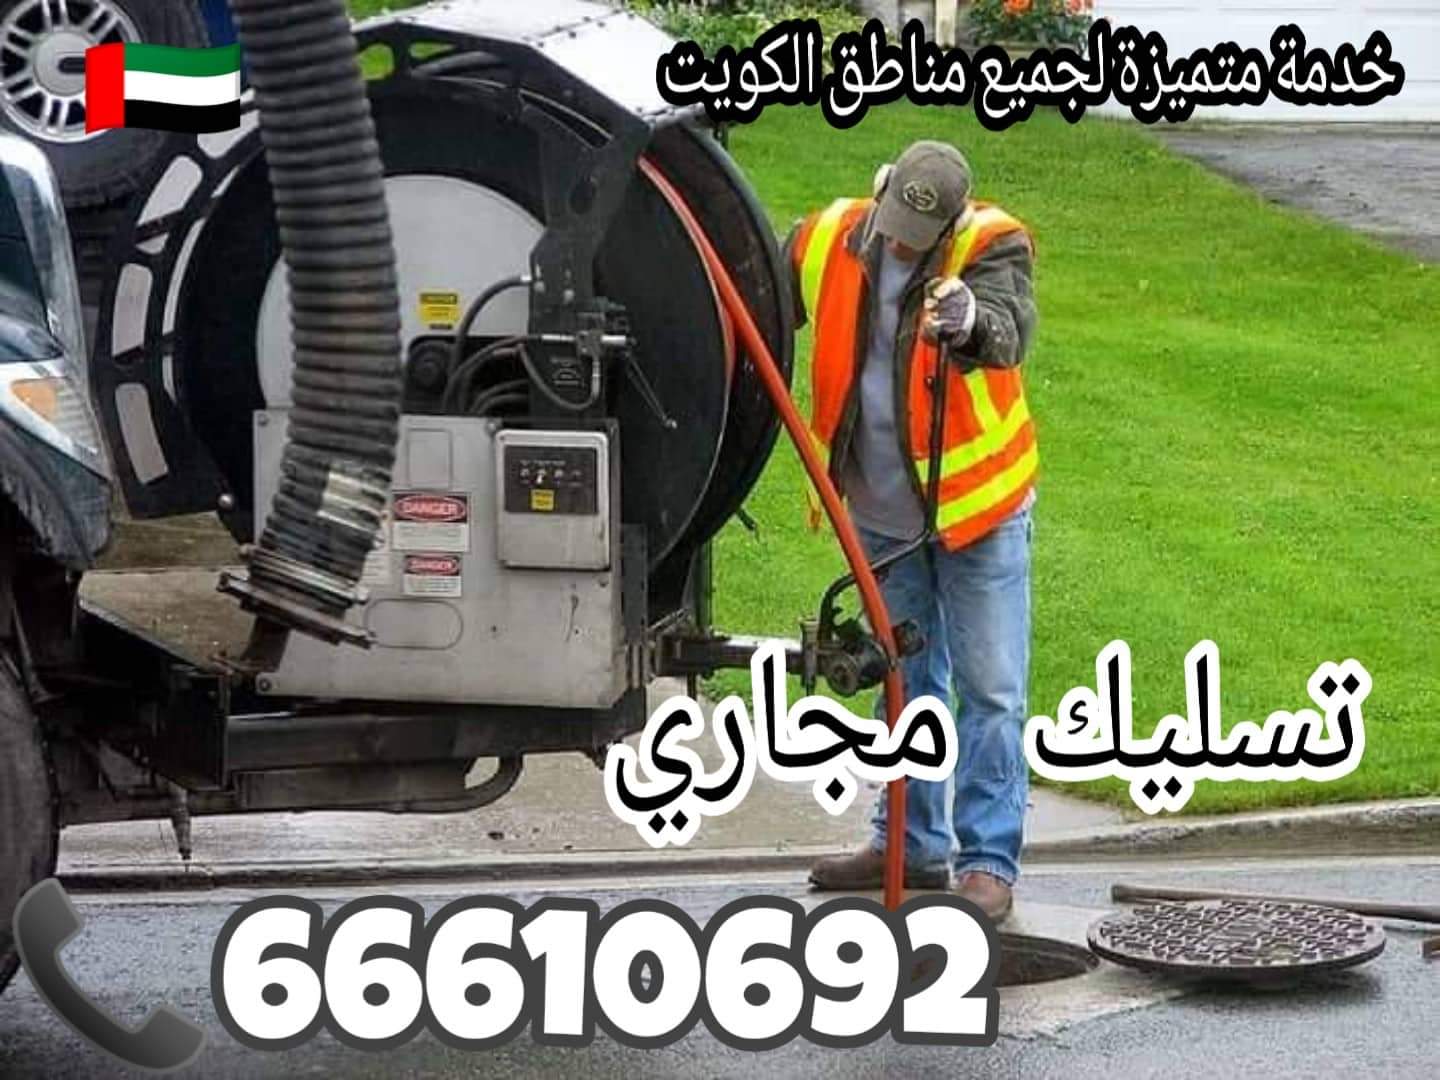 تسليك مجاري الاحمدي / 66610692 / صيانة وتركيب ادوات صحية الكويت